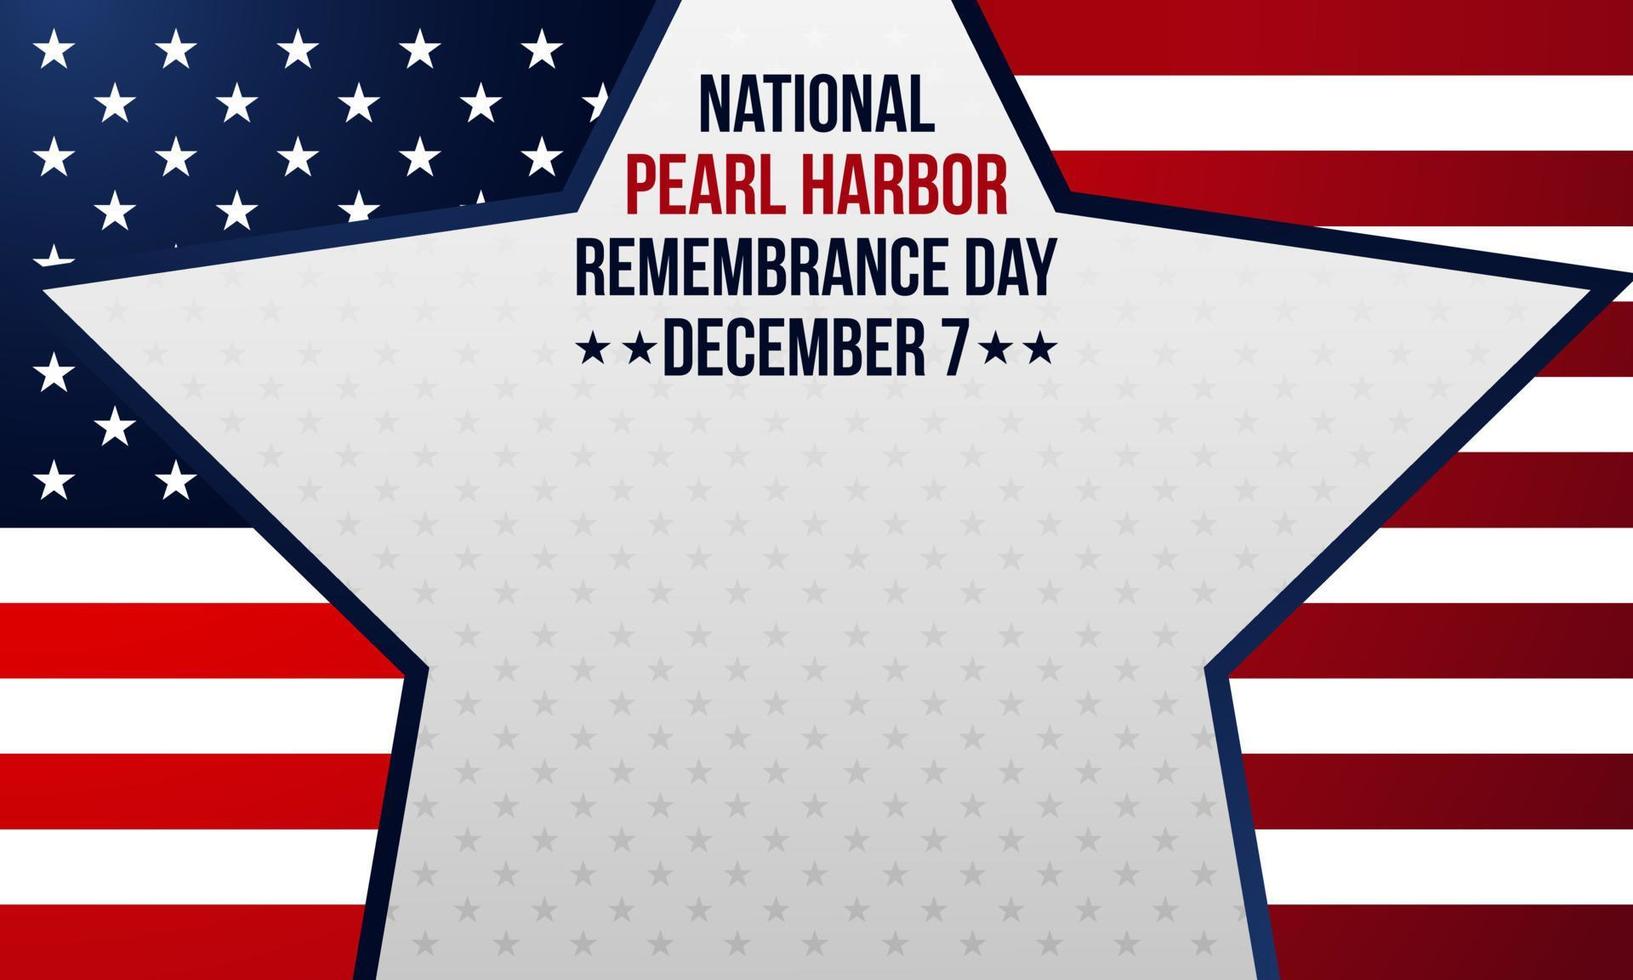 Pearl Harbor herdenkingsdag achtergrond. 7 december sjabloon voor spandoek, wenskaart of poster. met ster, ankerpictogram en nationale vlag van de VS. premium vectorillustratie vector